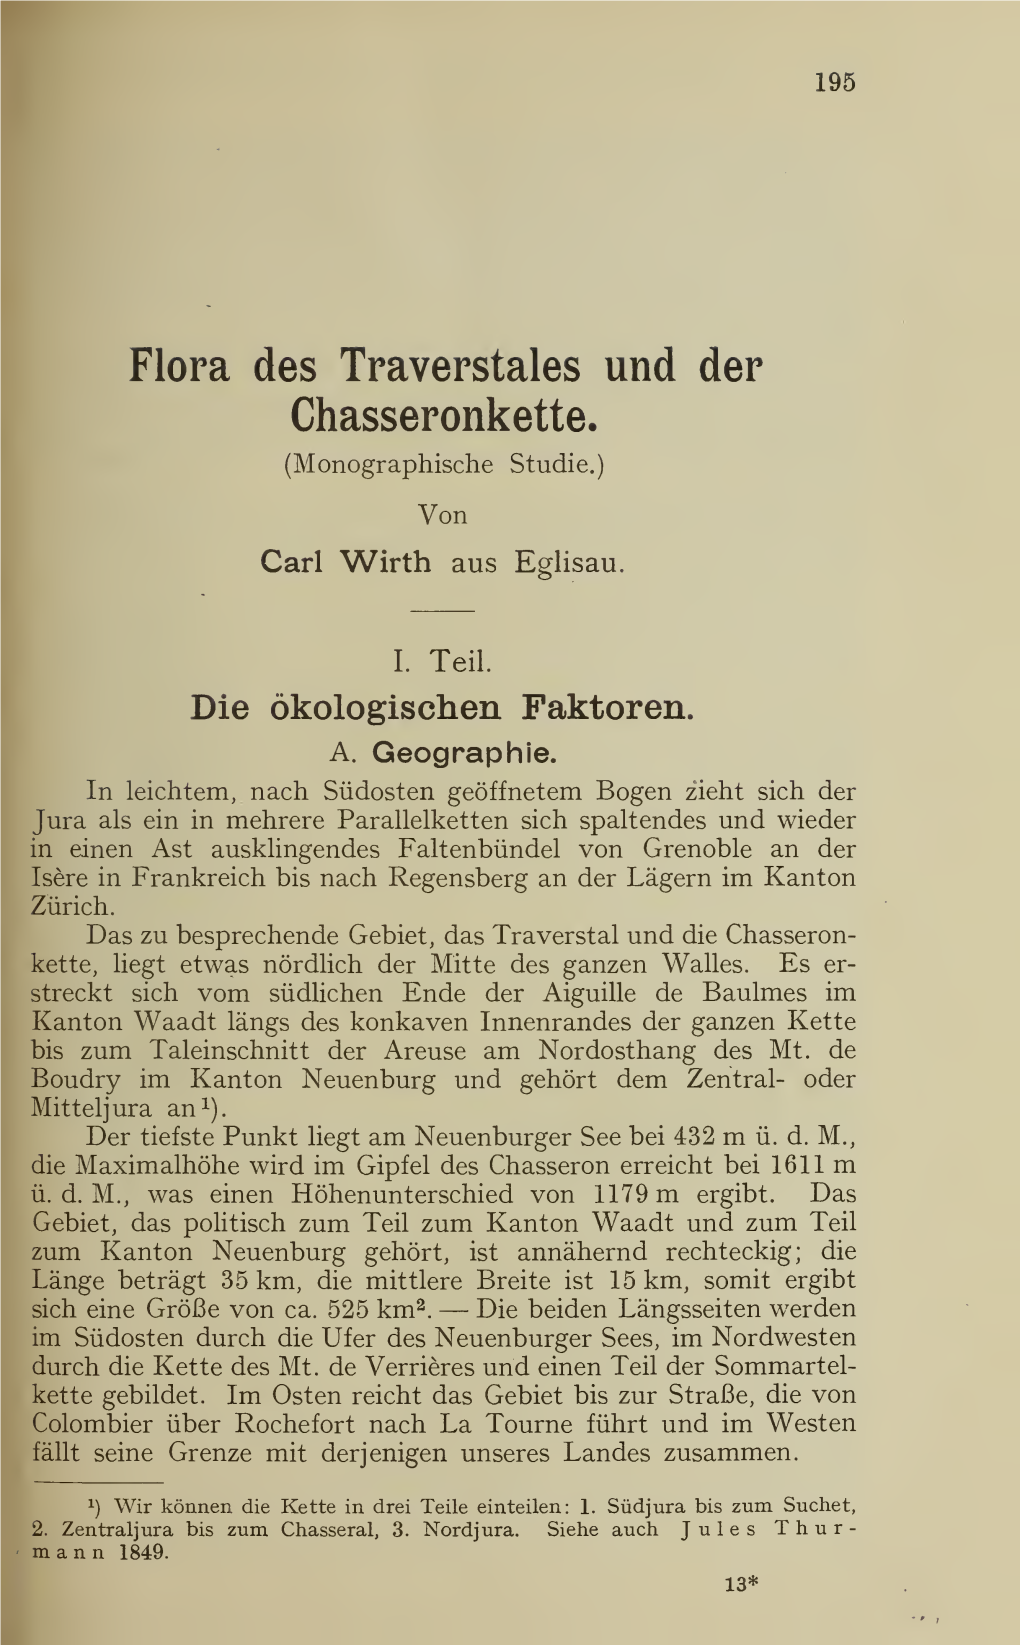 Flora Des Traverstales Und Der Chasseronkette. (Monographische Studie.) Von Carl Wirth Aus Eglisau